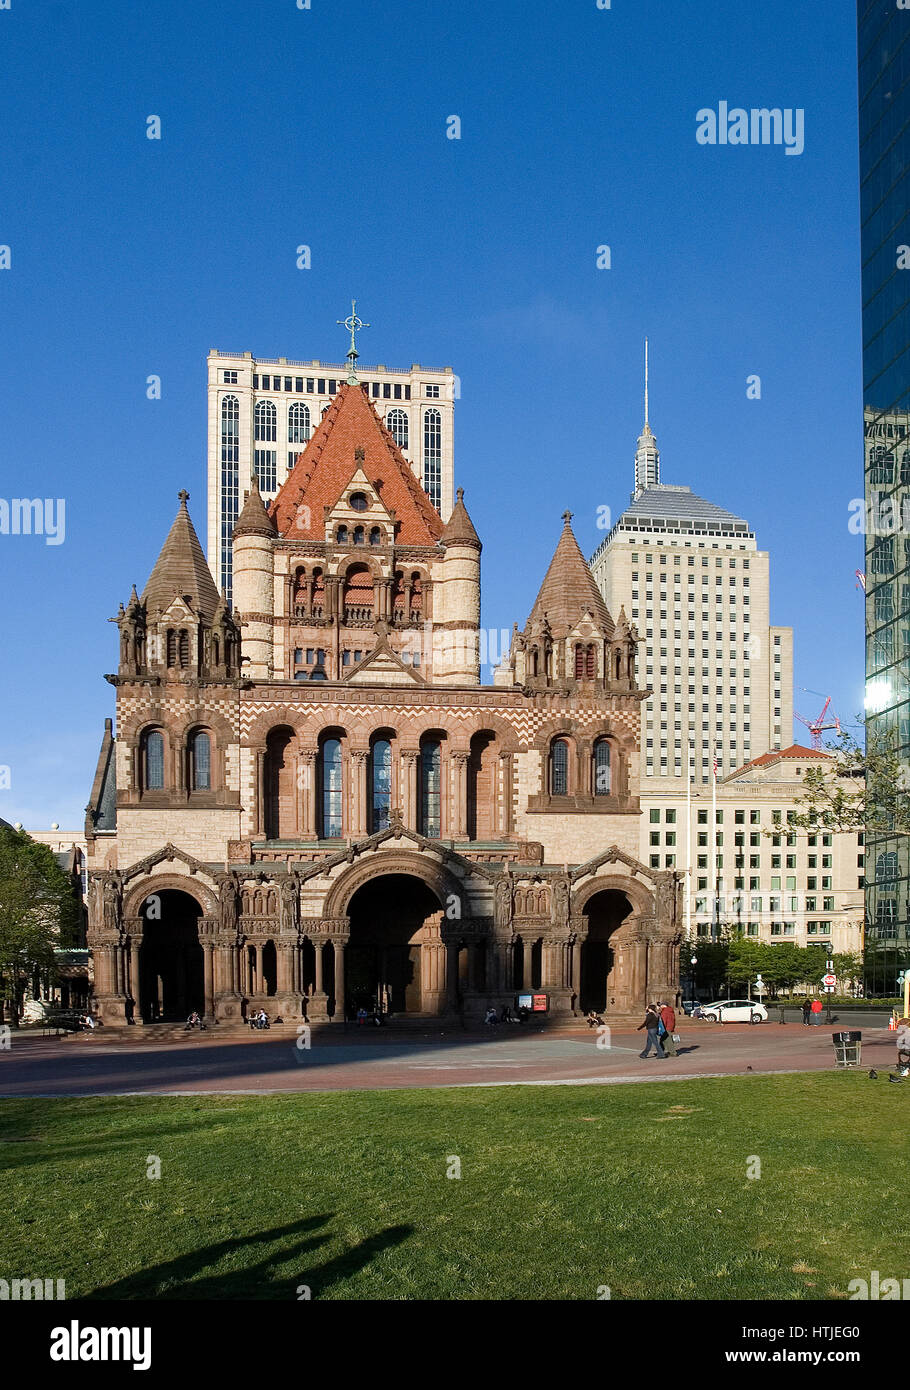 Historischen Dreifaltigkeitskirche - Copley Square, Boston, Massachusetts Stockfoto